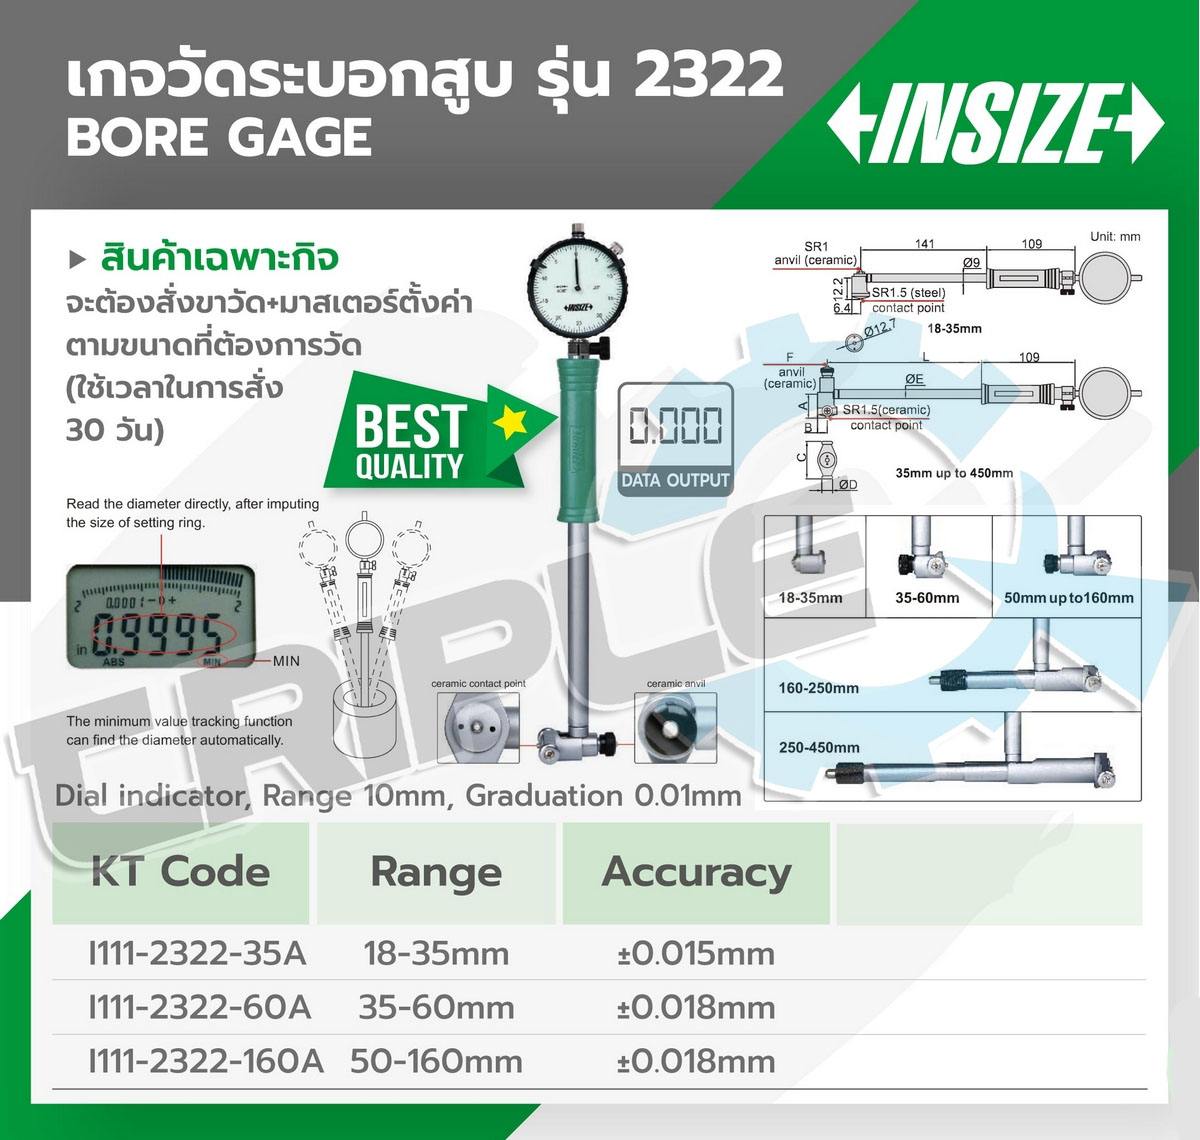 INSIZE - เกจวัดกระบอกสูบ (บอร์เกจวัดรูใน) (Bore Gage) รุ่น 2322-160A ช่วงระยะวัด 50-160 มม. ความละเอียด 0.003 มม. ความแม่นยำ +/- 0.018 มม.